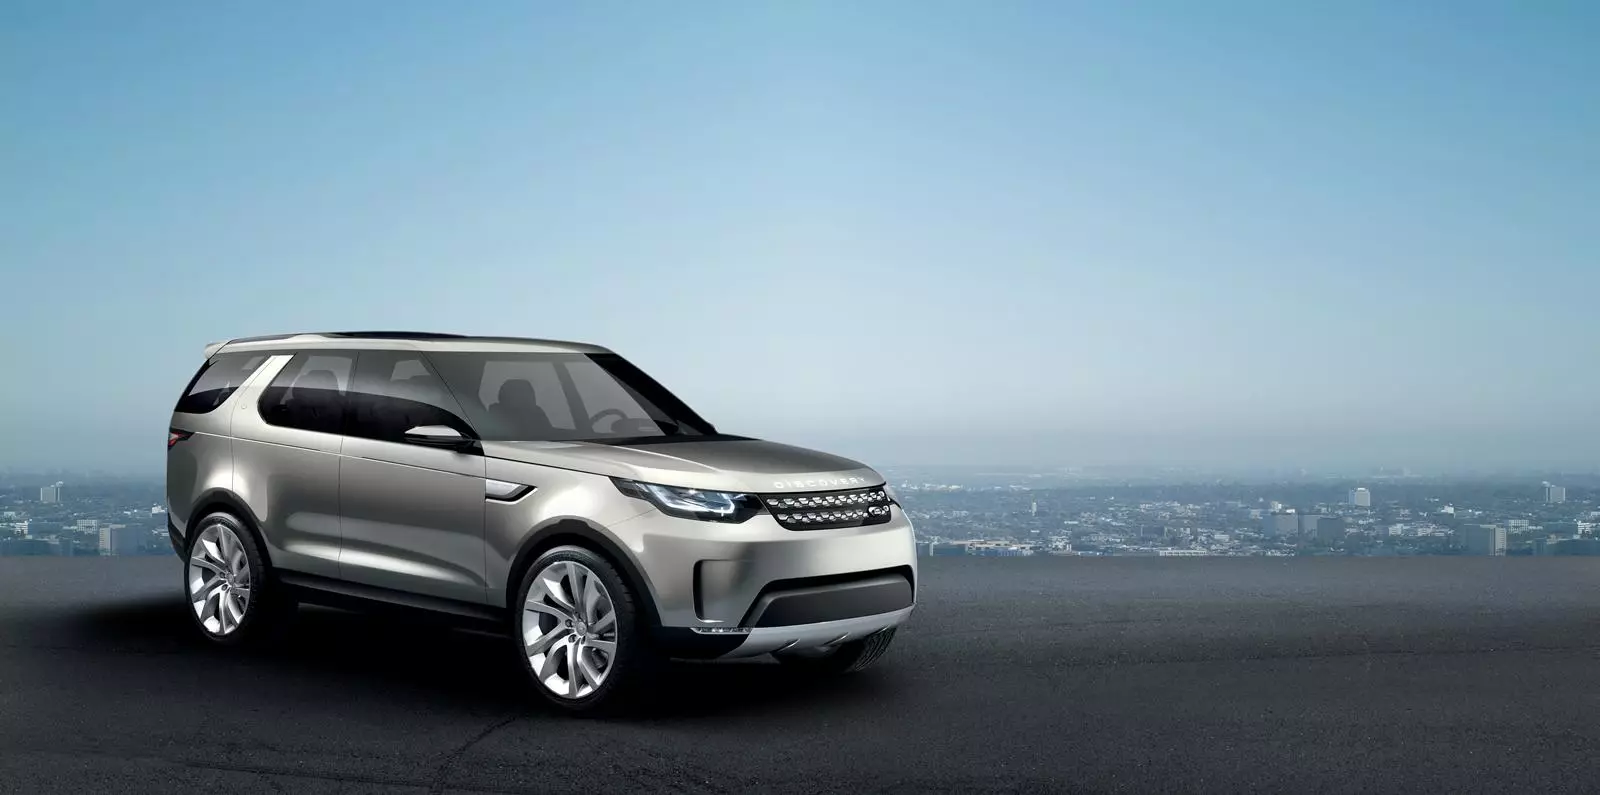 Bagong Land Rover Discovery Vision Concept: Magiging ganito ang hinaharap ng tatak ng British